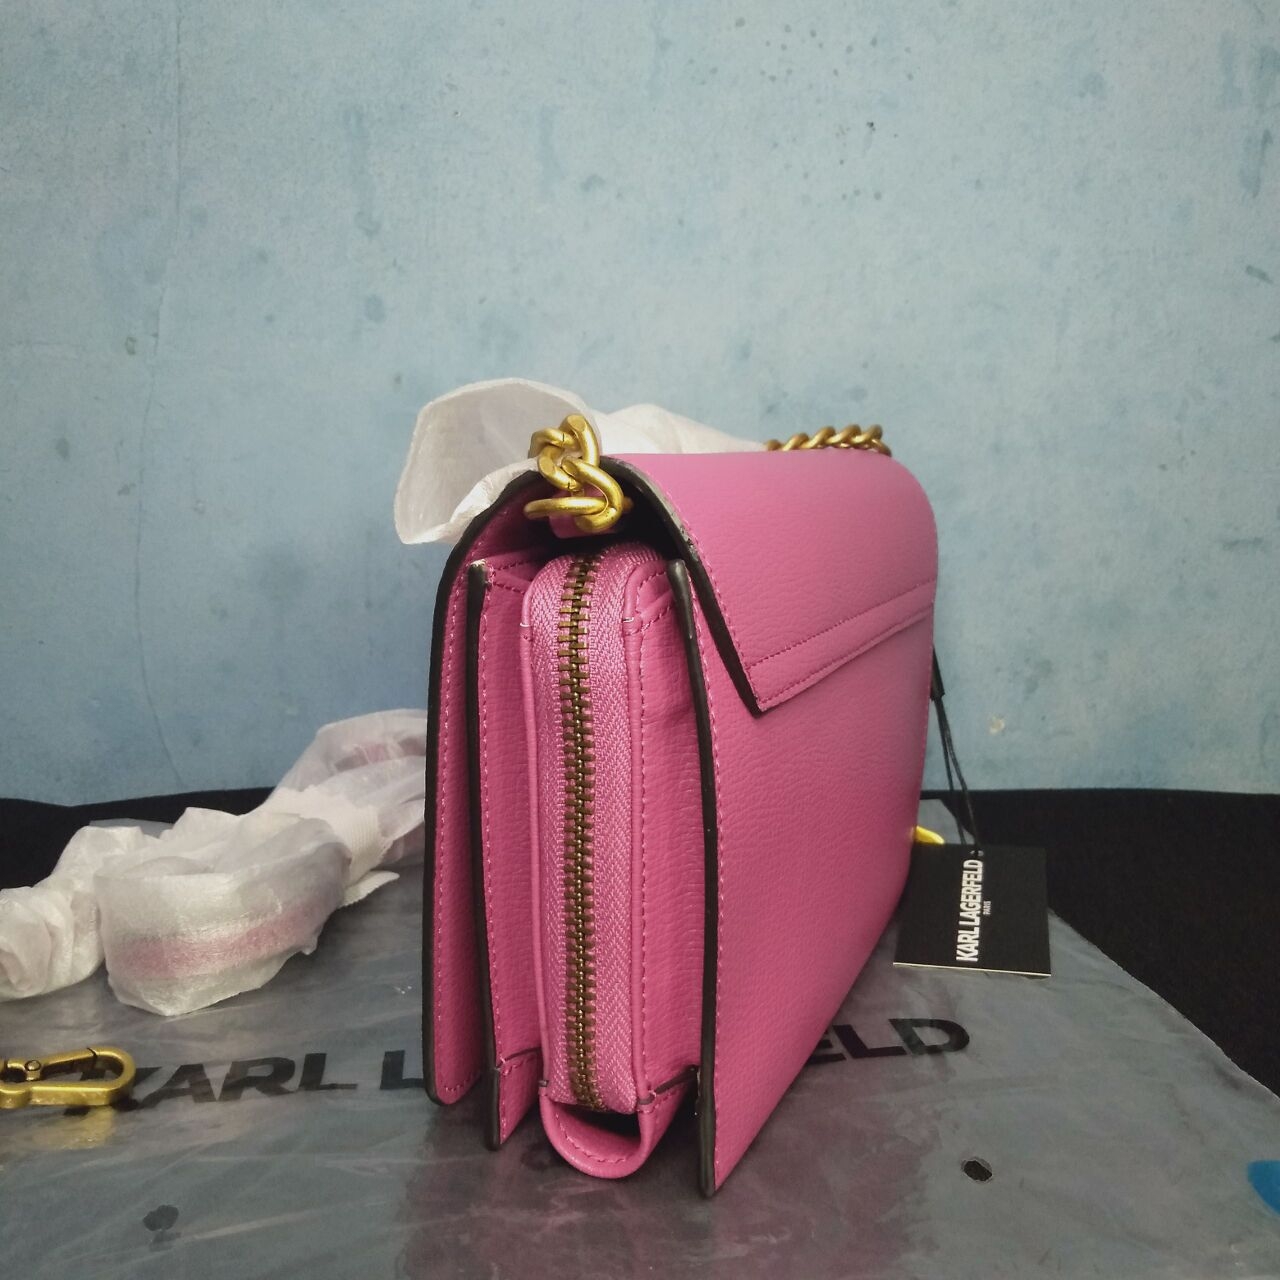 Karl Lagerfeld Pink Shoulder Bag